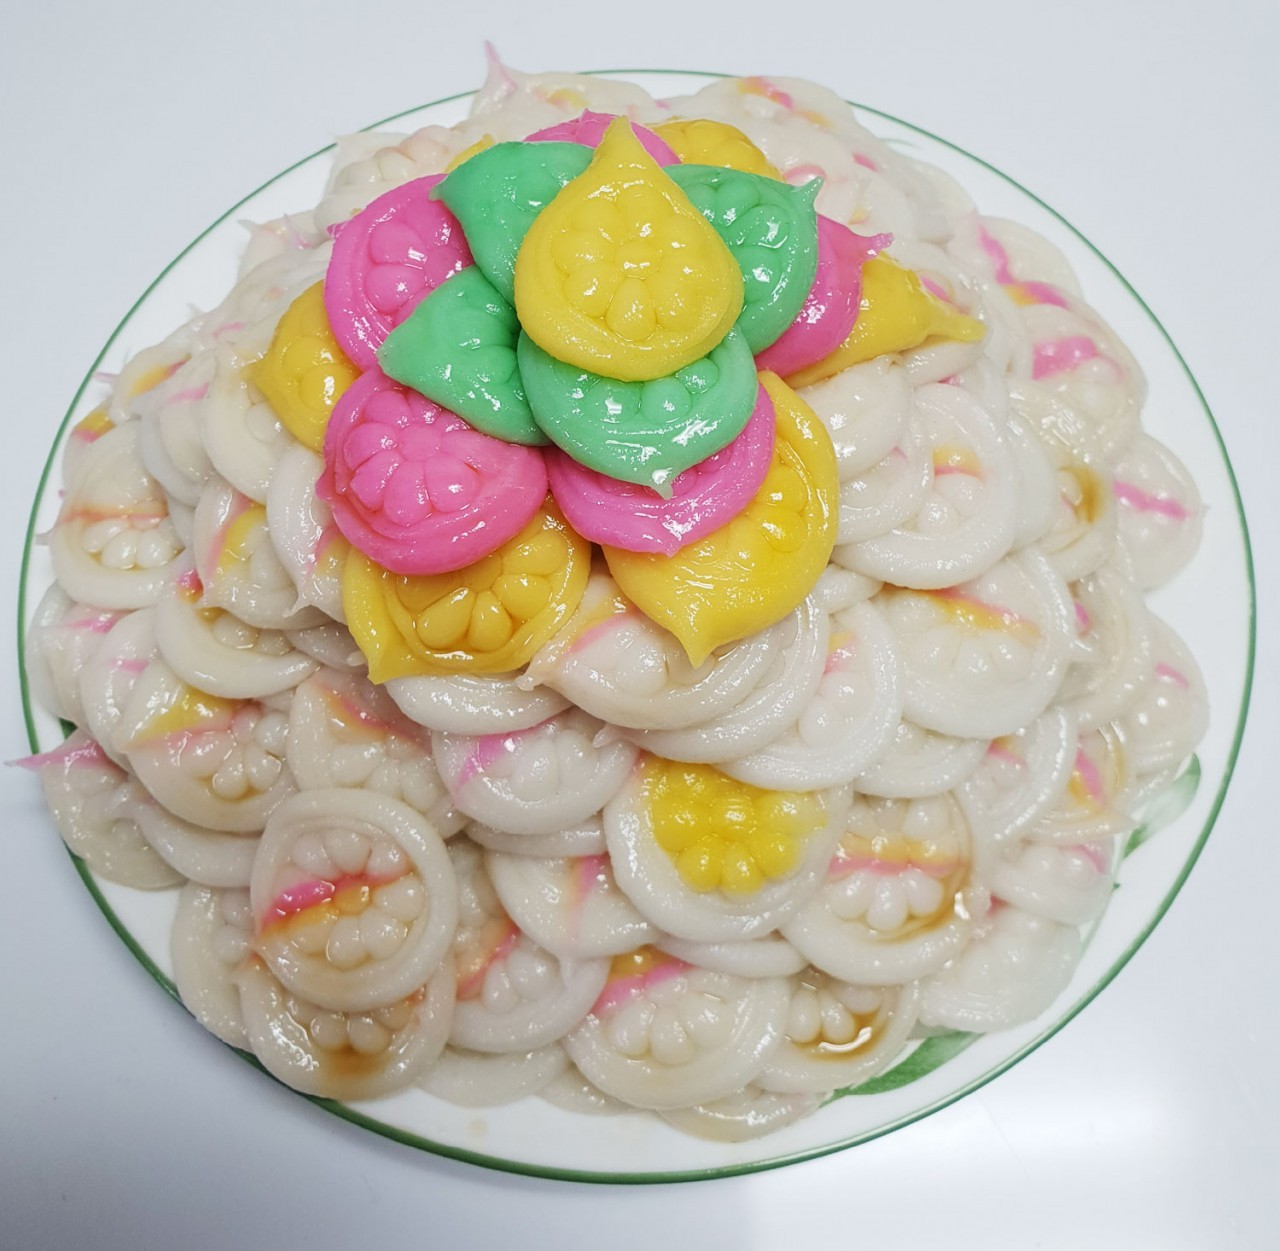 Kkori-tteok, a typical North Korean rice cake (Hong Eun-hye)